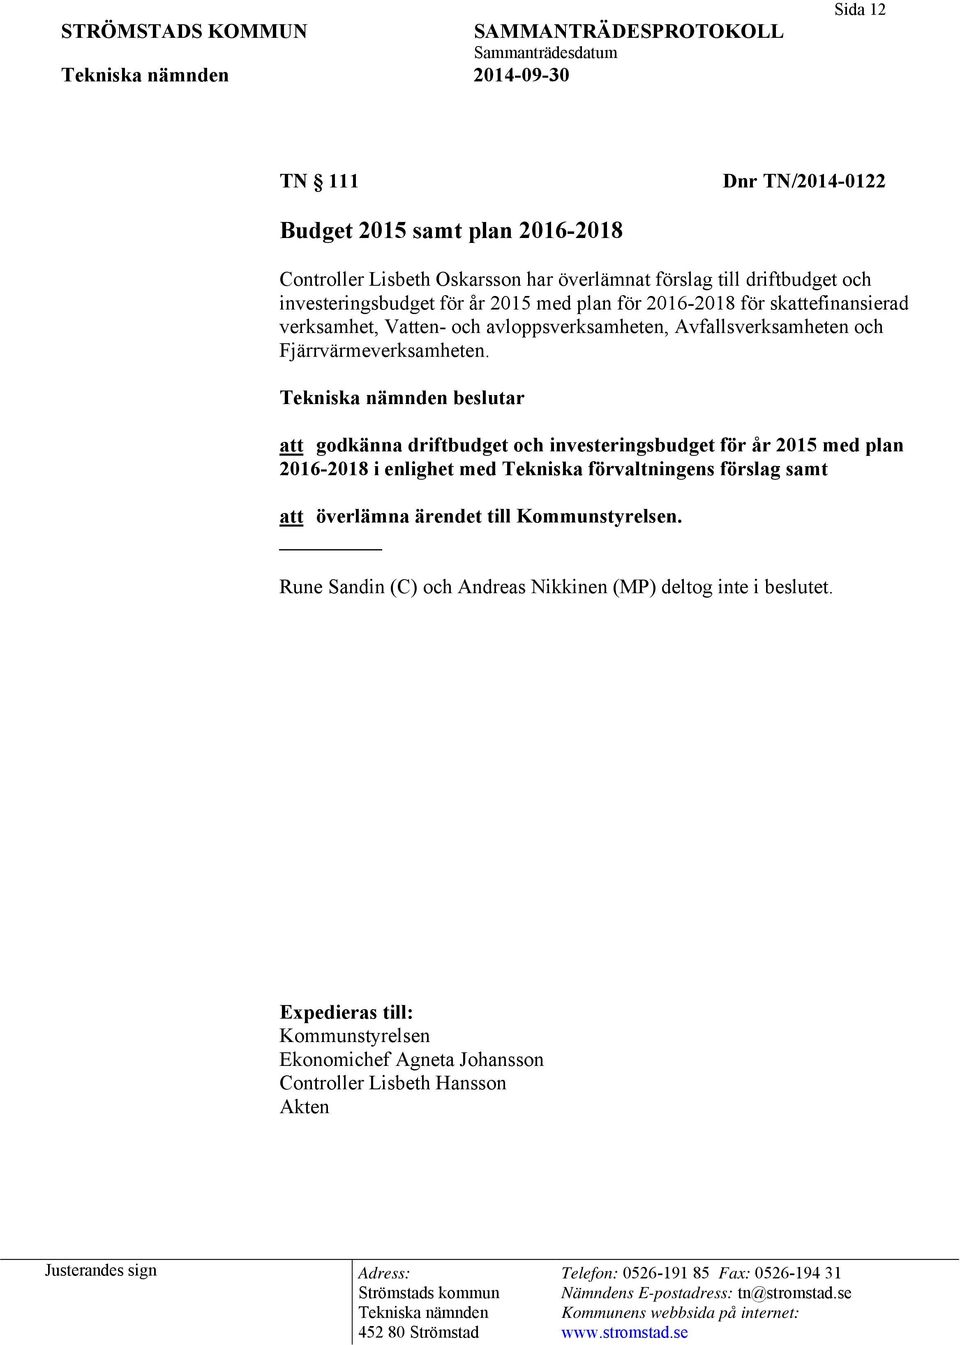 beslutar att godkänna driftbudget och investeringsbudget för år 2015 med plan 2016-2018 i enlighet med Tekniska förvaltningens förslag samt att överlämna